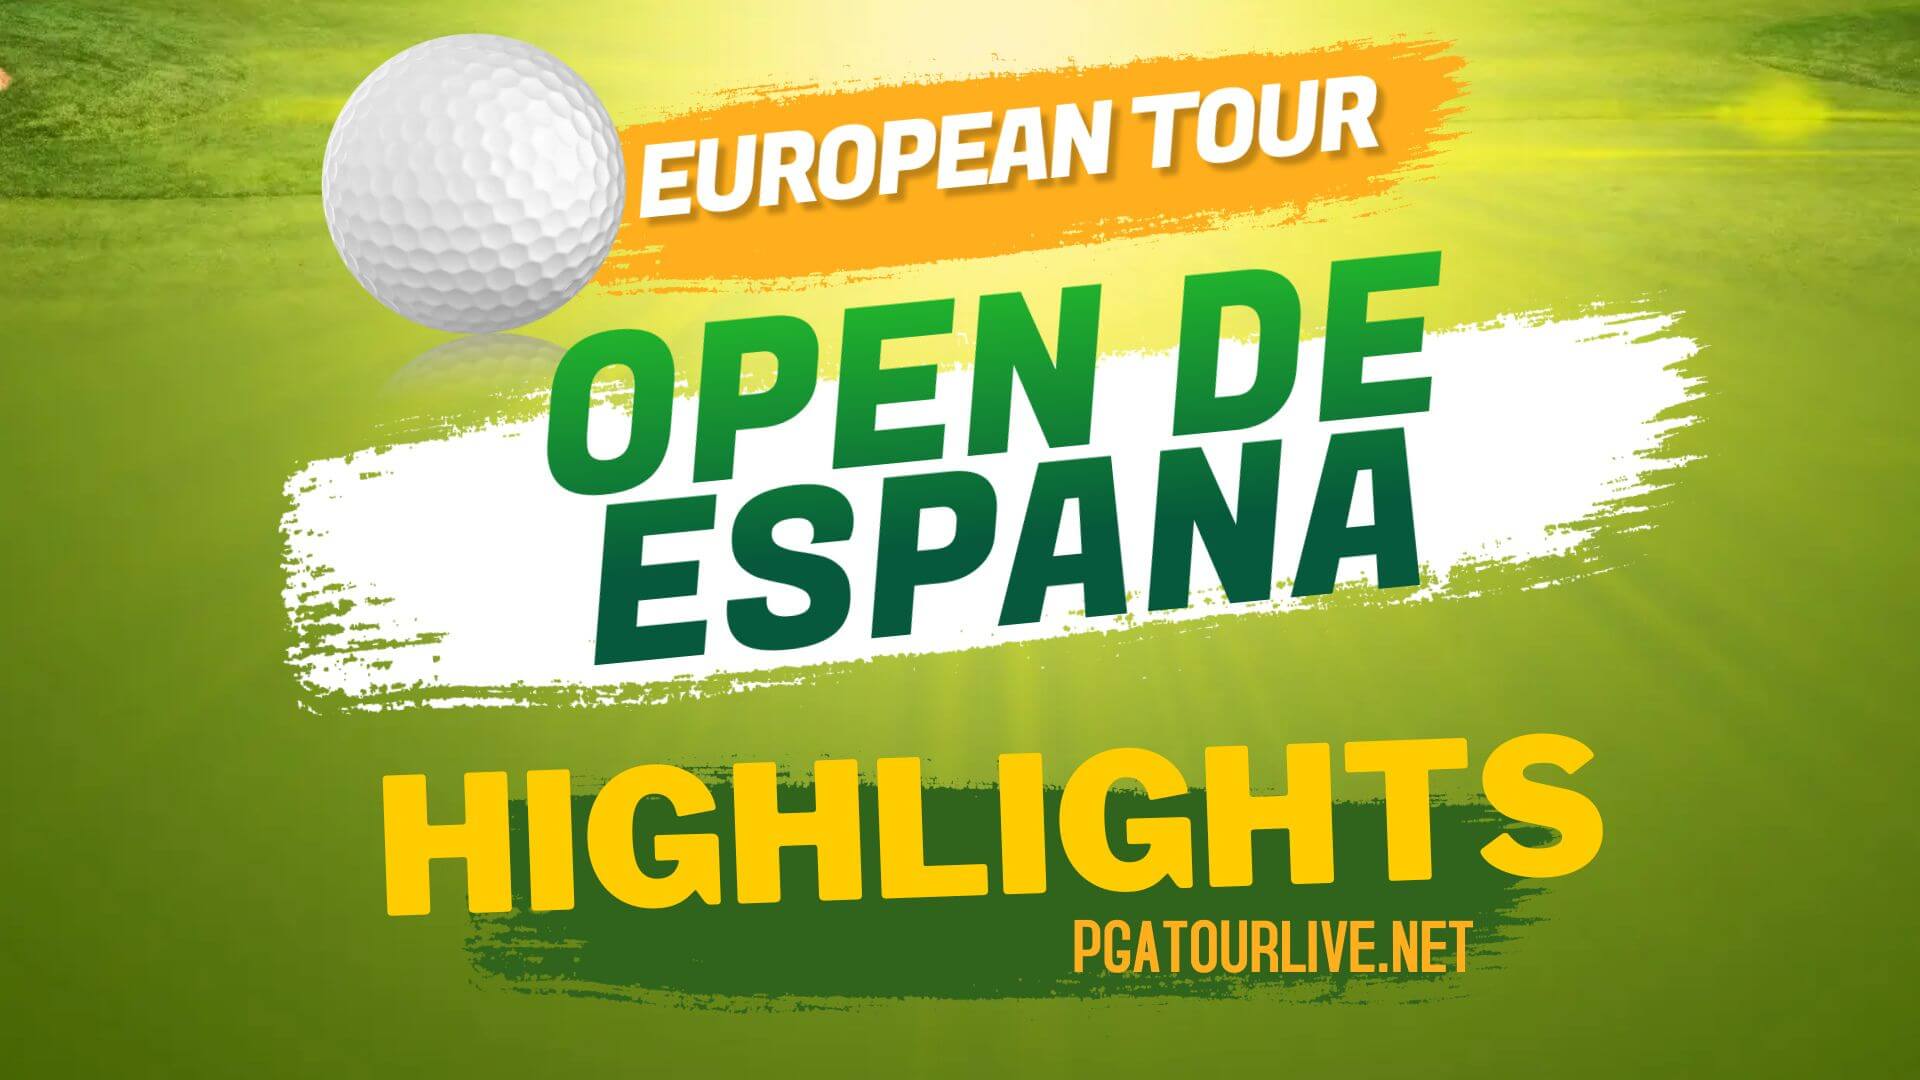 Open De Espana Highlights Day 3 European Tour 2022